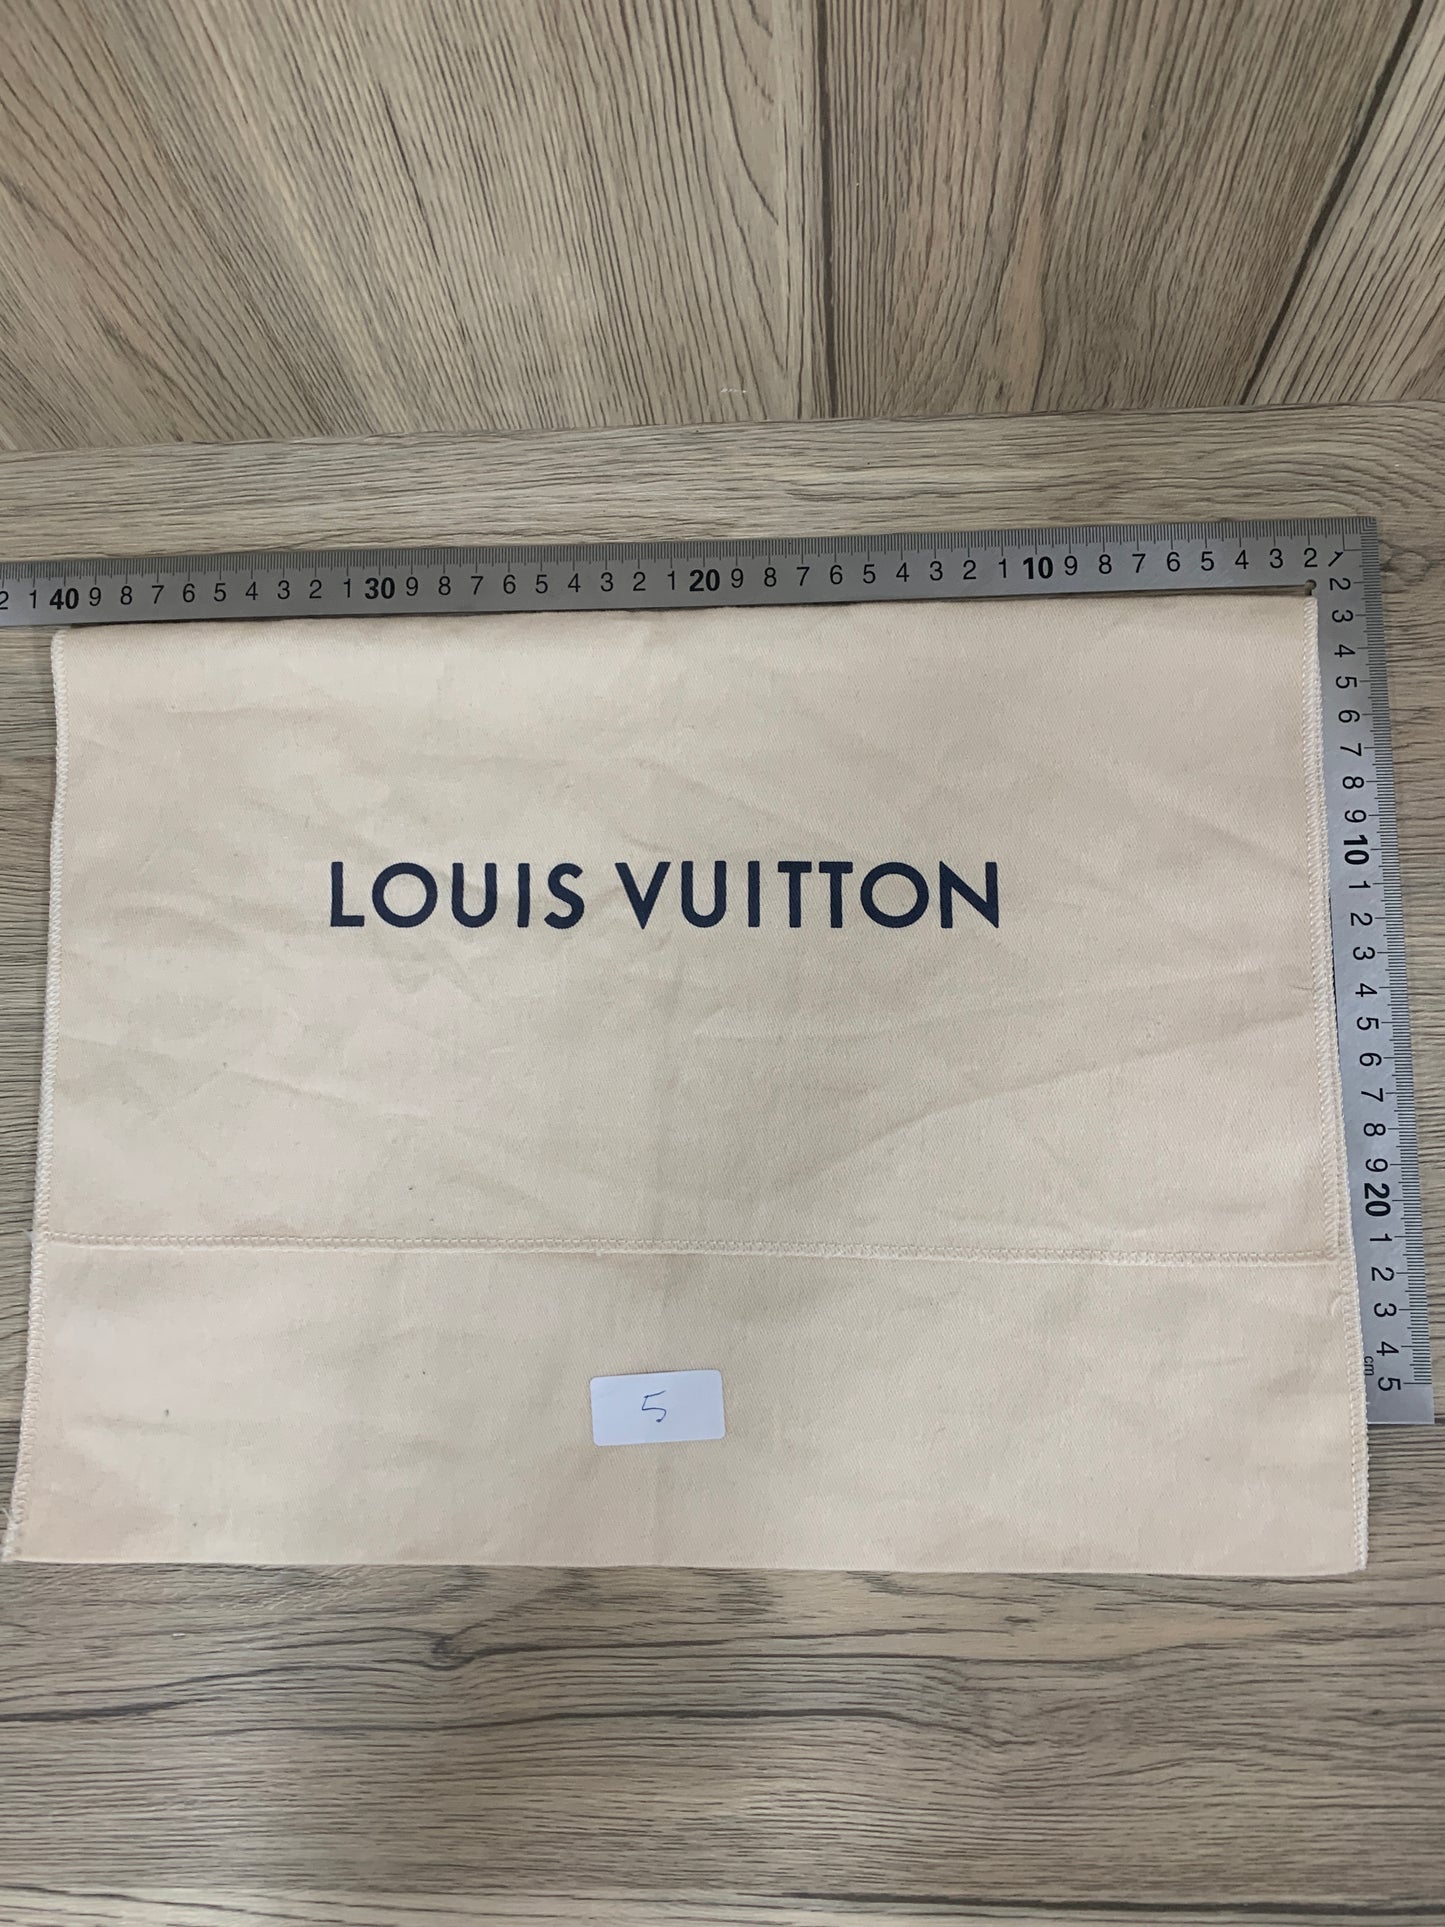 Authentic Beige LOUIS VUITTON shoe boots bag wallet purse dust bag cover LV handbag gift dust bag